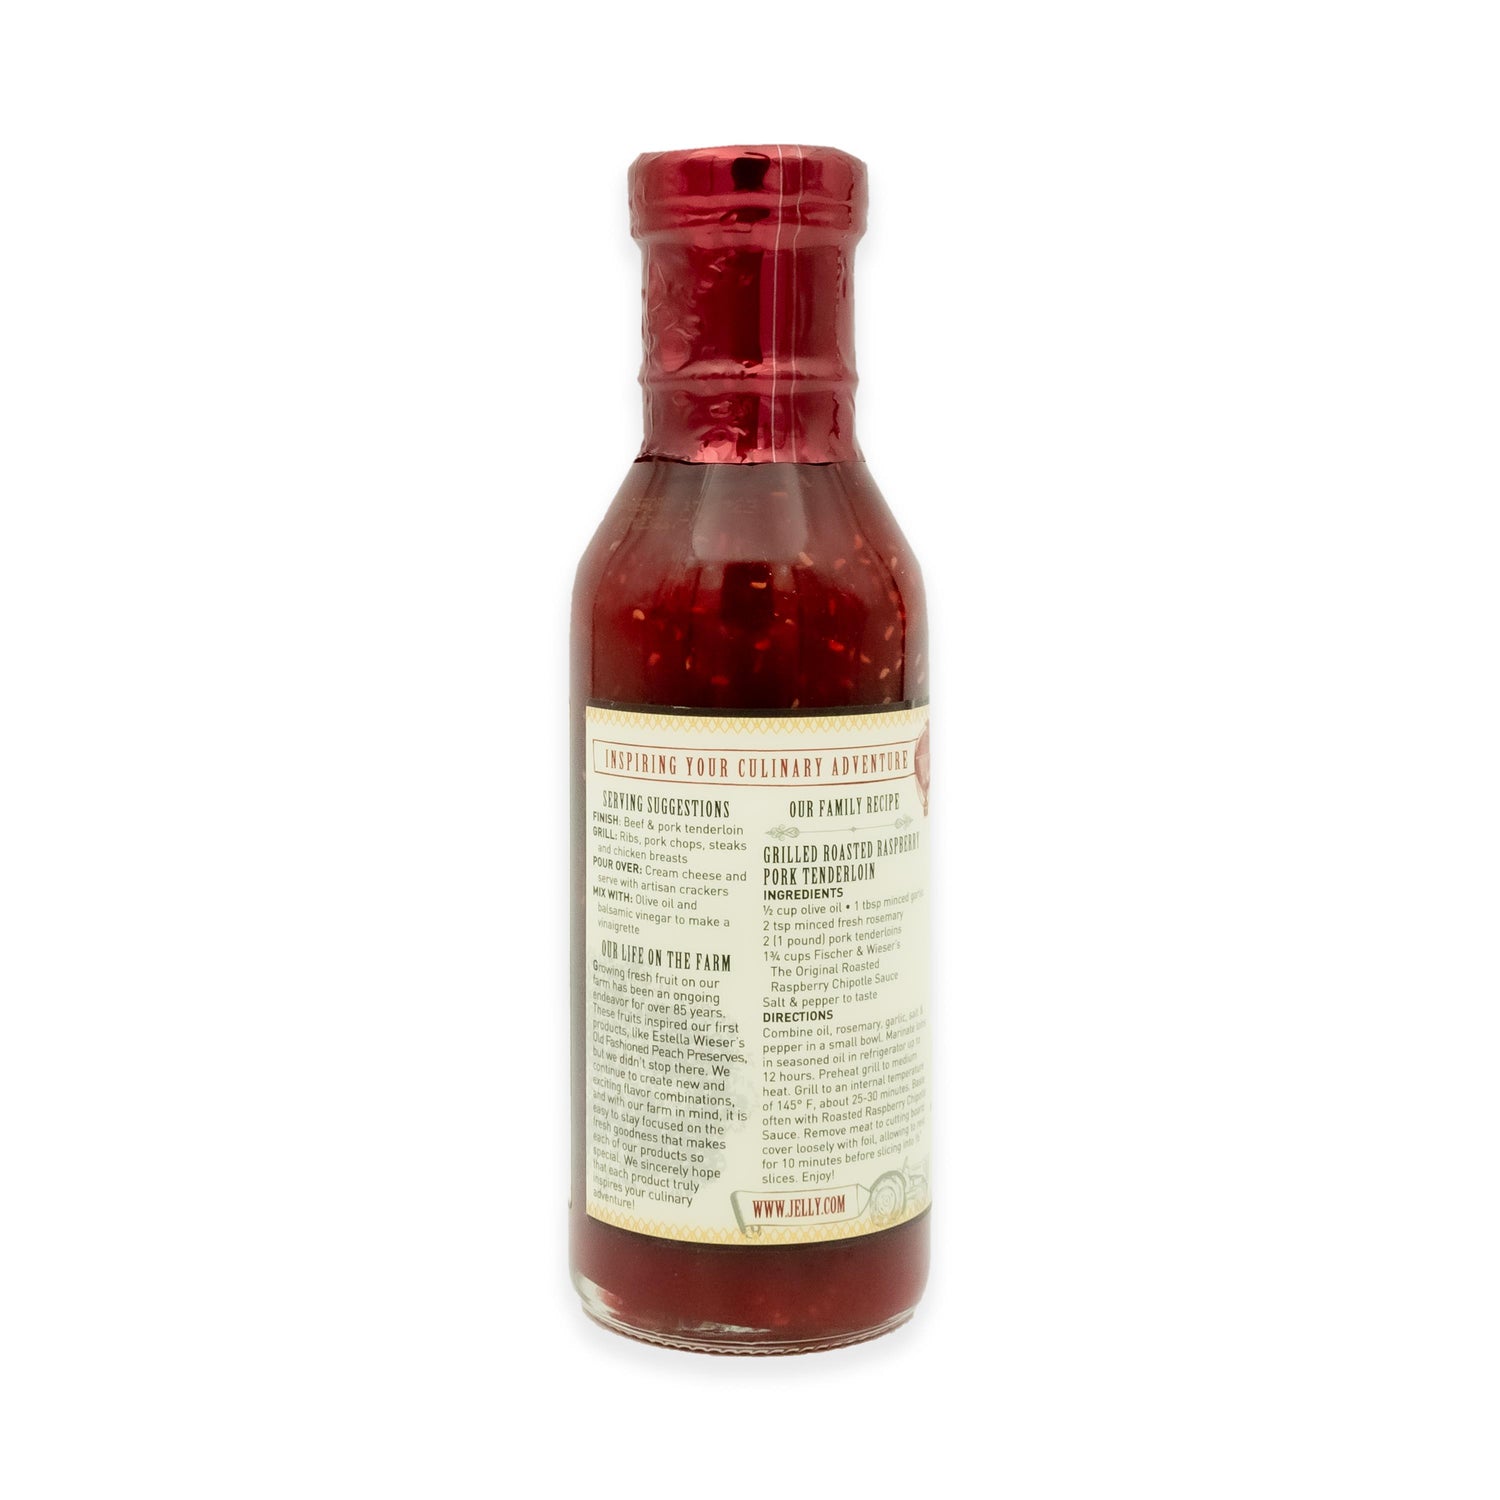 Fischer & Wieser Roasted Raspberry Chipotle Sauce